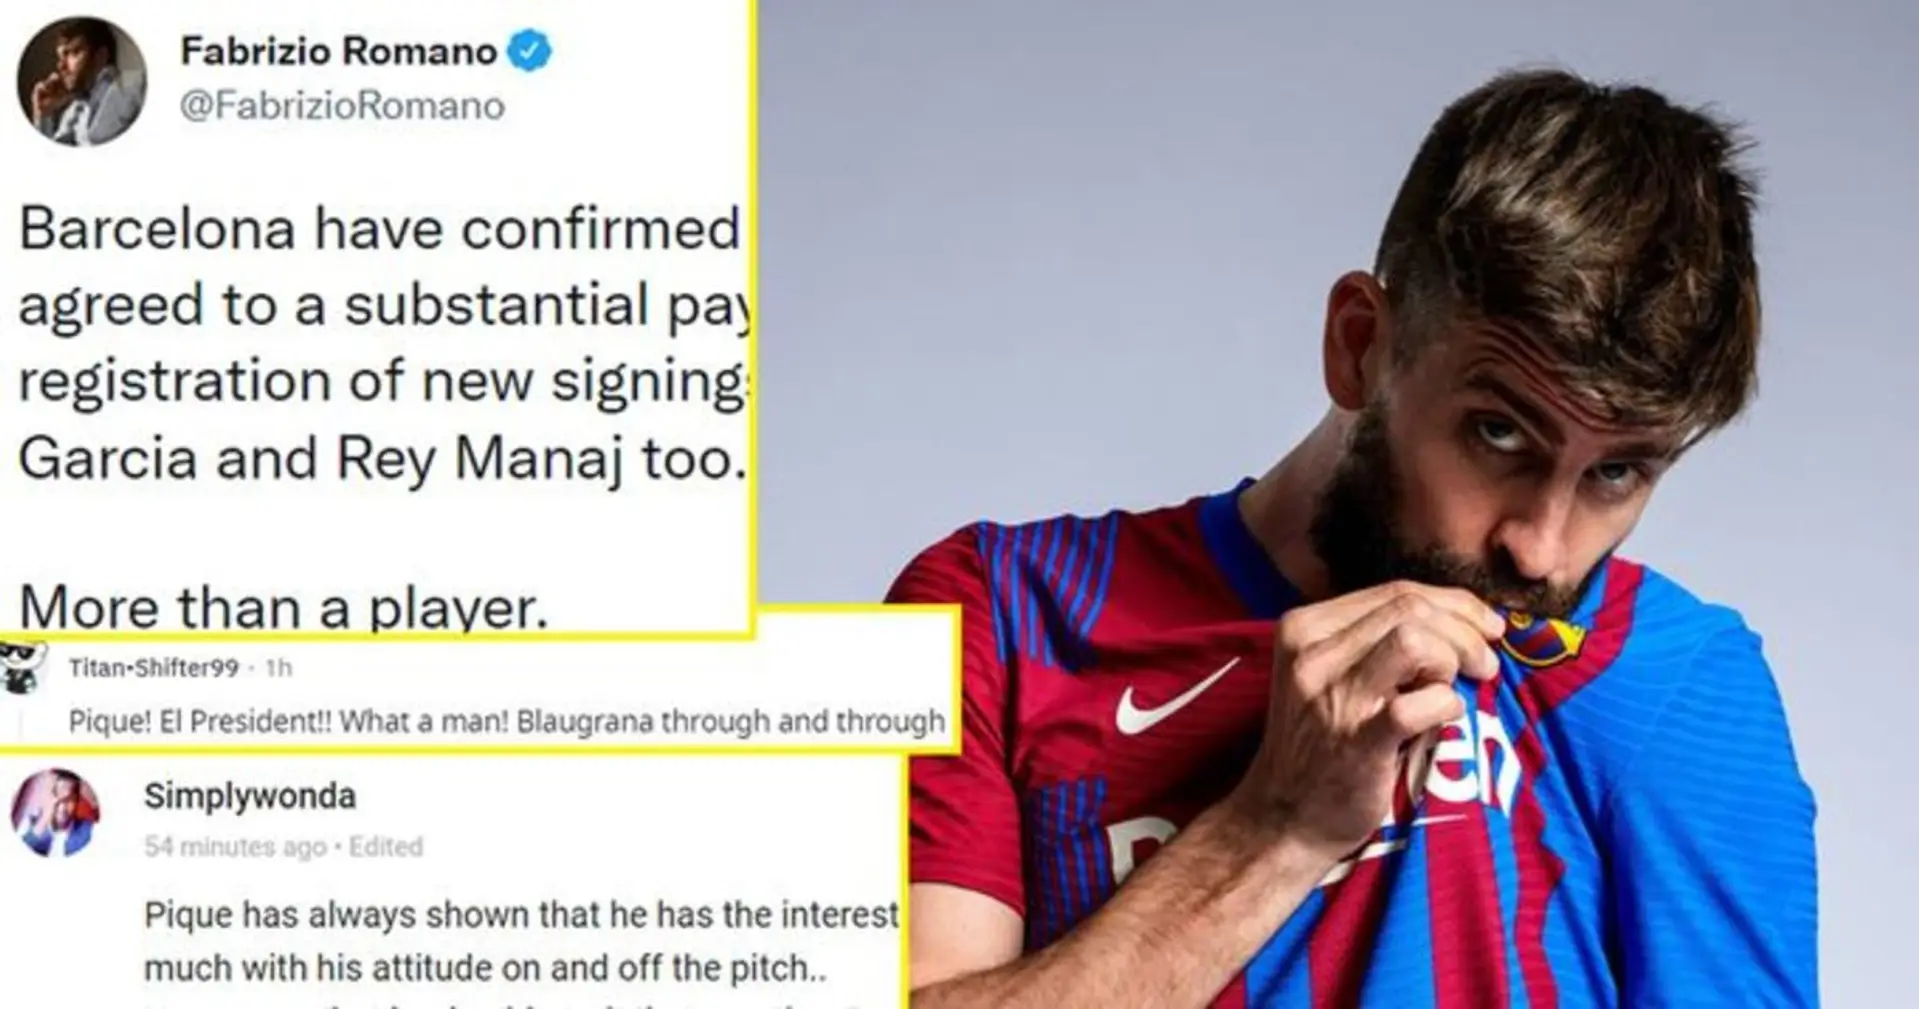 'Más que un jugador': el mundo del fútbol reacciona a que Piqué reduzca su salario para permitir que el Barça registre a Memphis y García